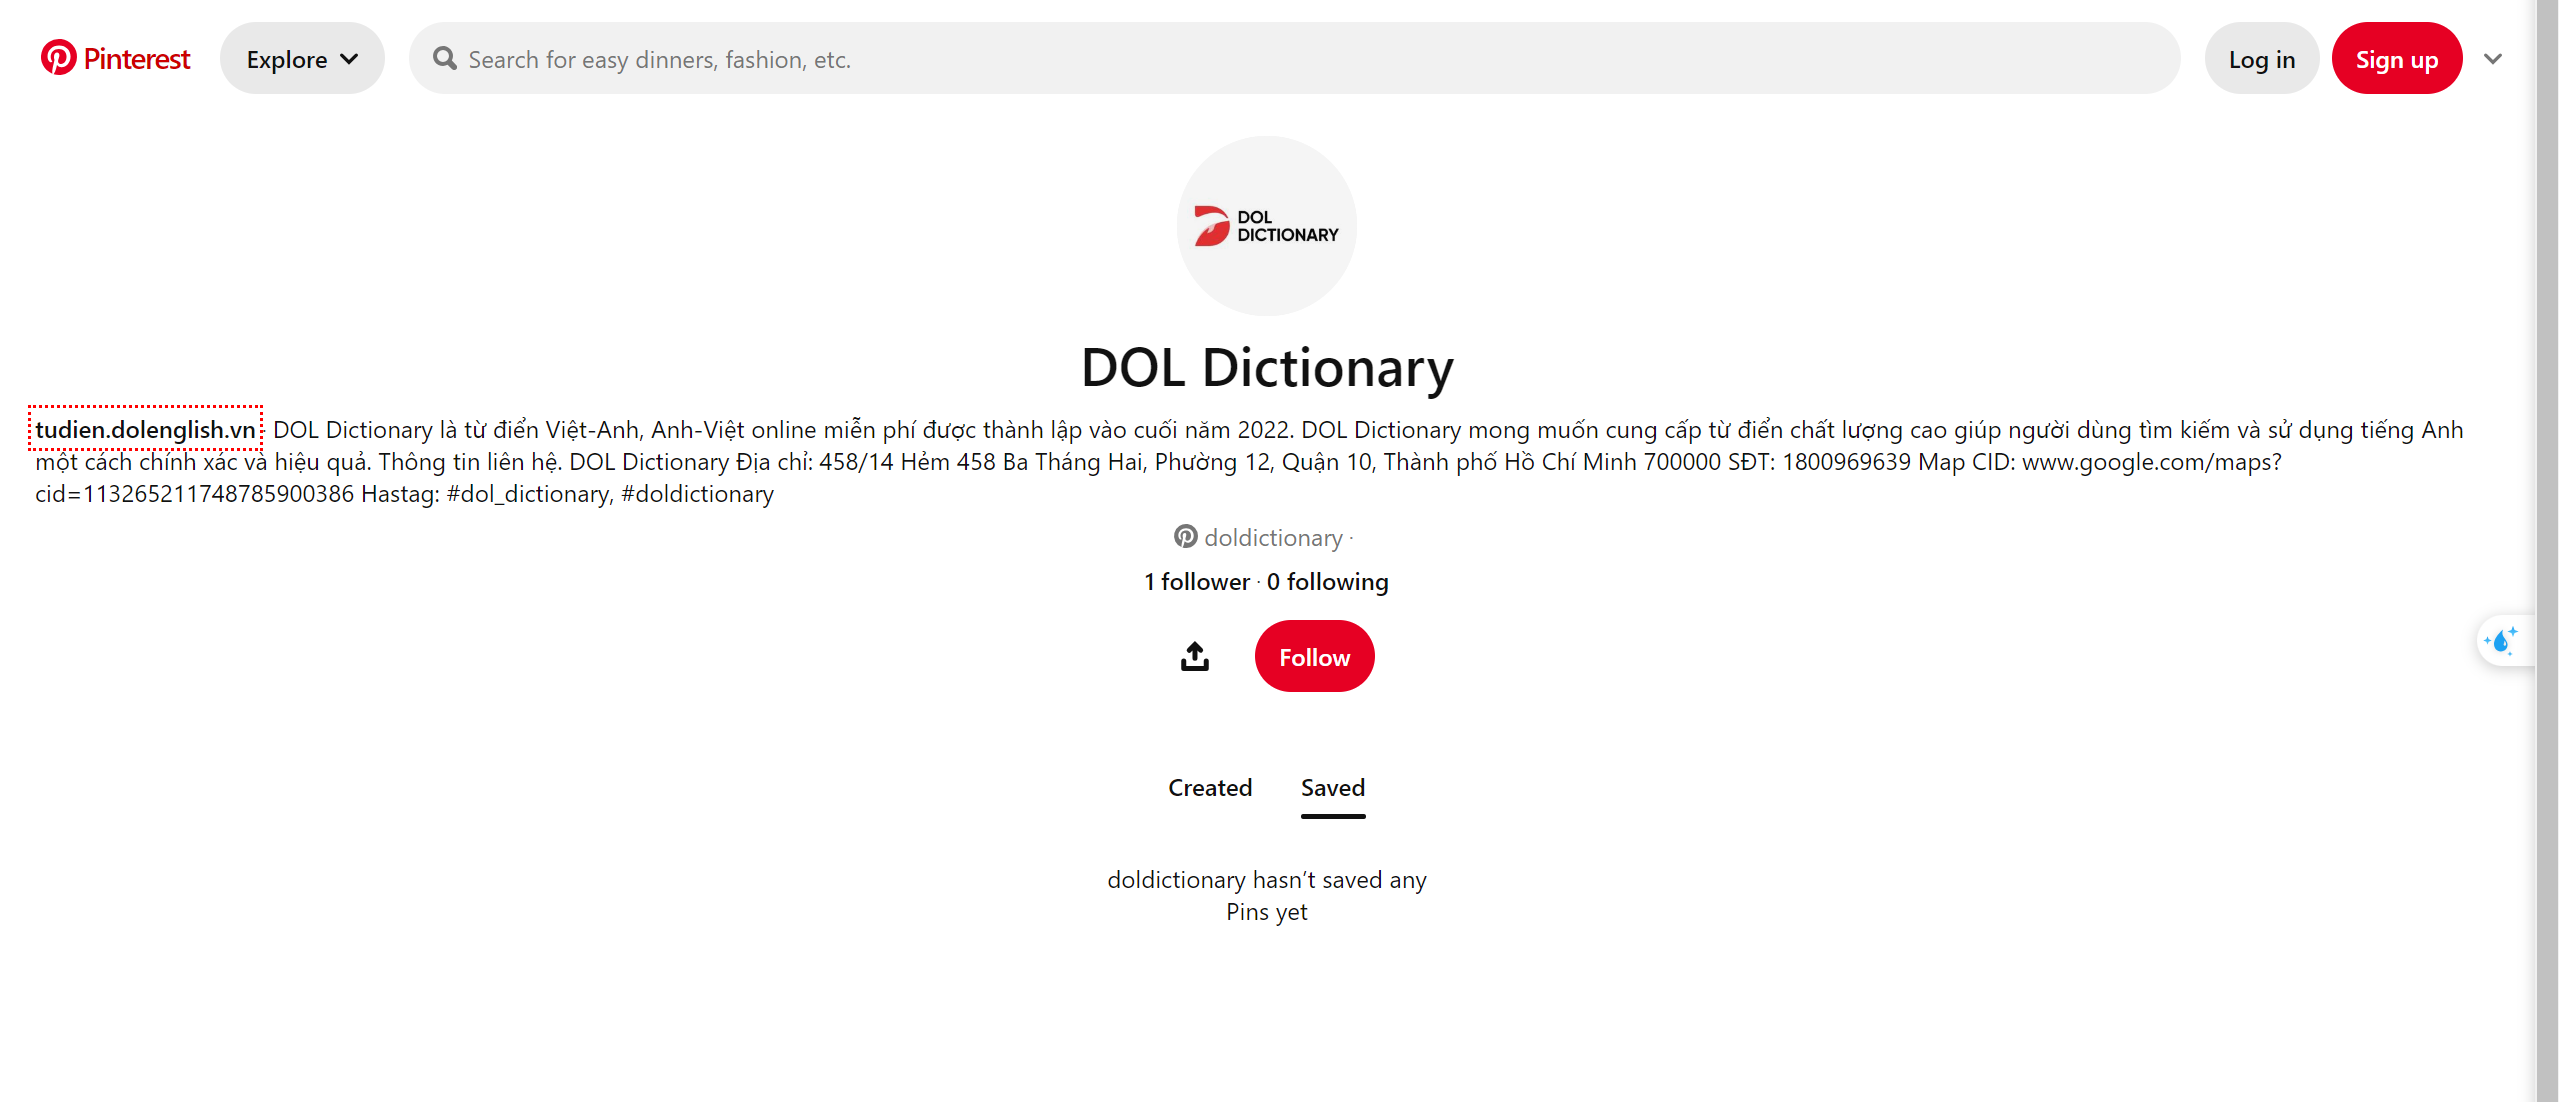  Từ điển việt-việt-anh Pinteres DOL Dictionary